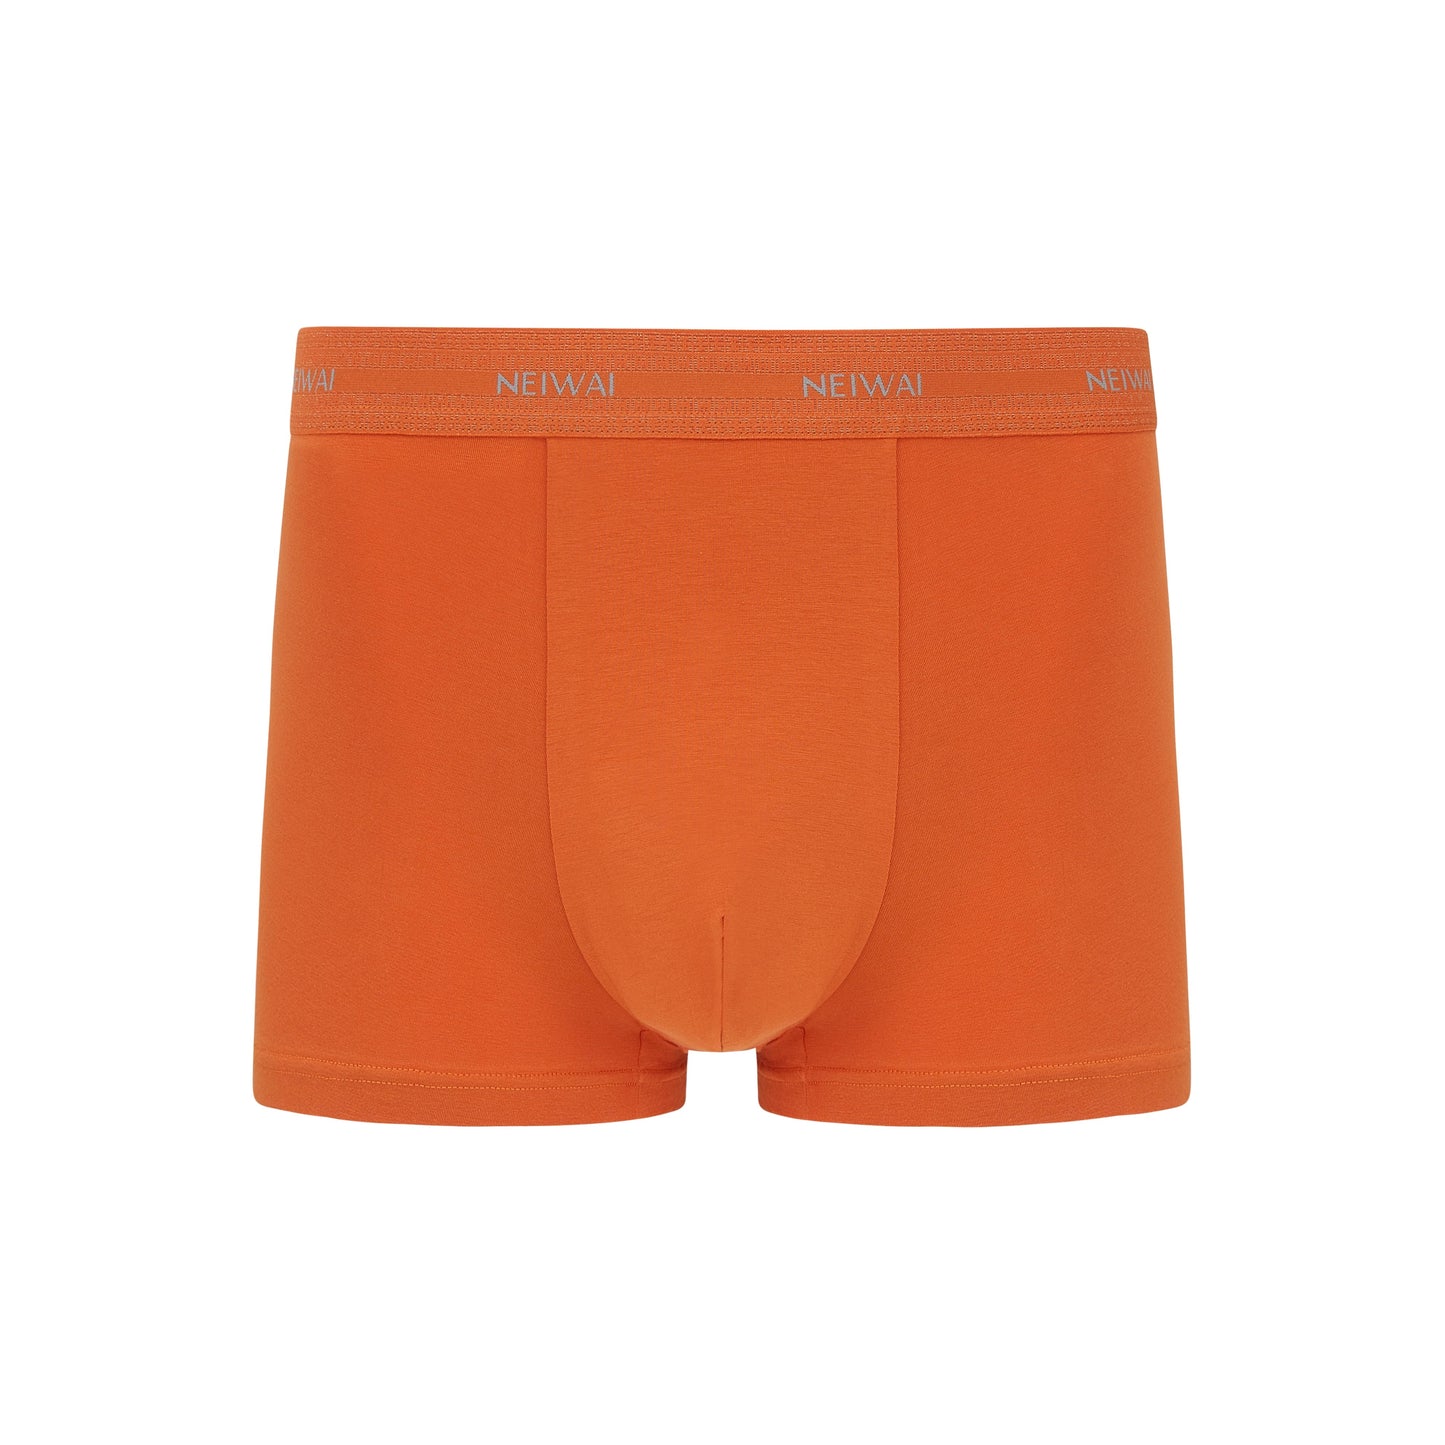 Men’s Cotton Boxer Brief in orange